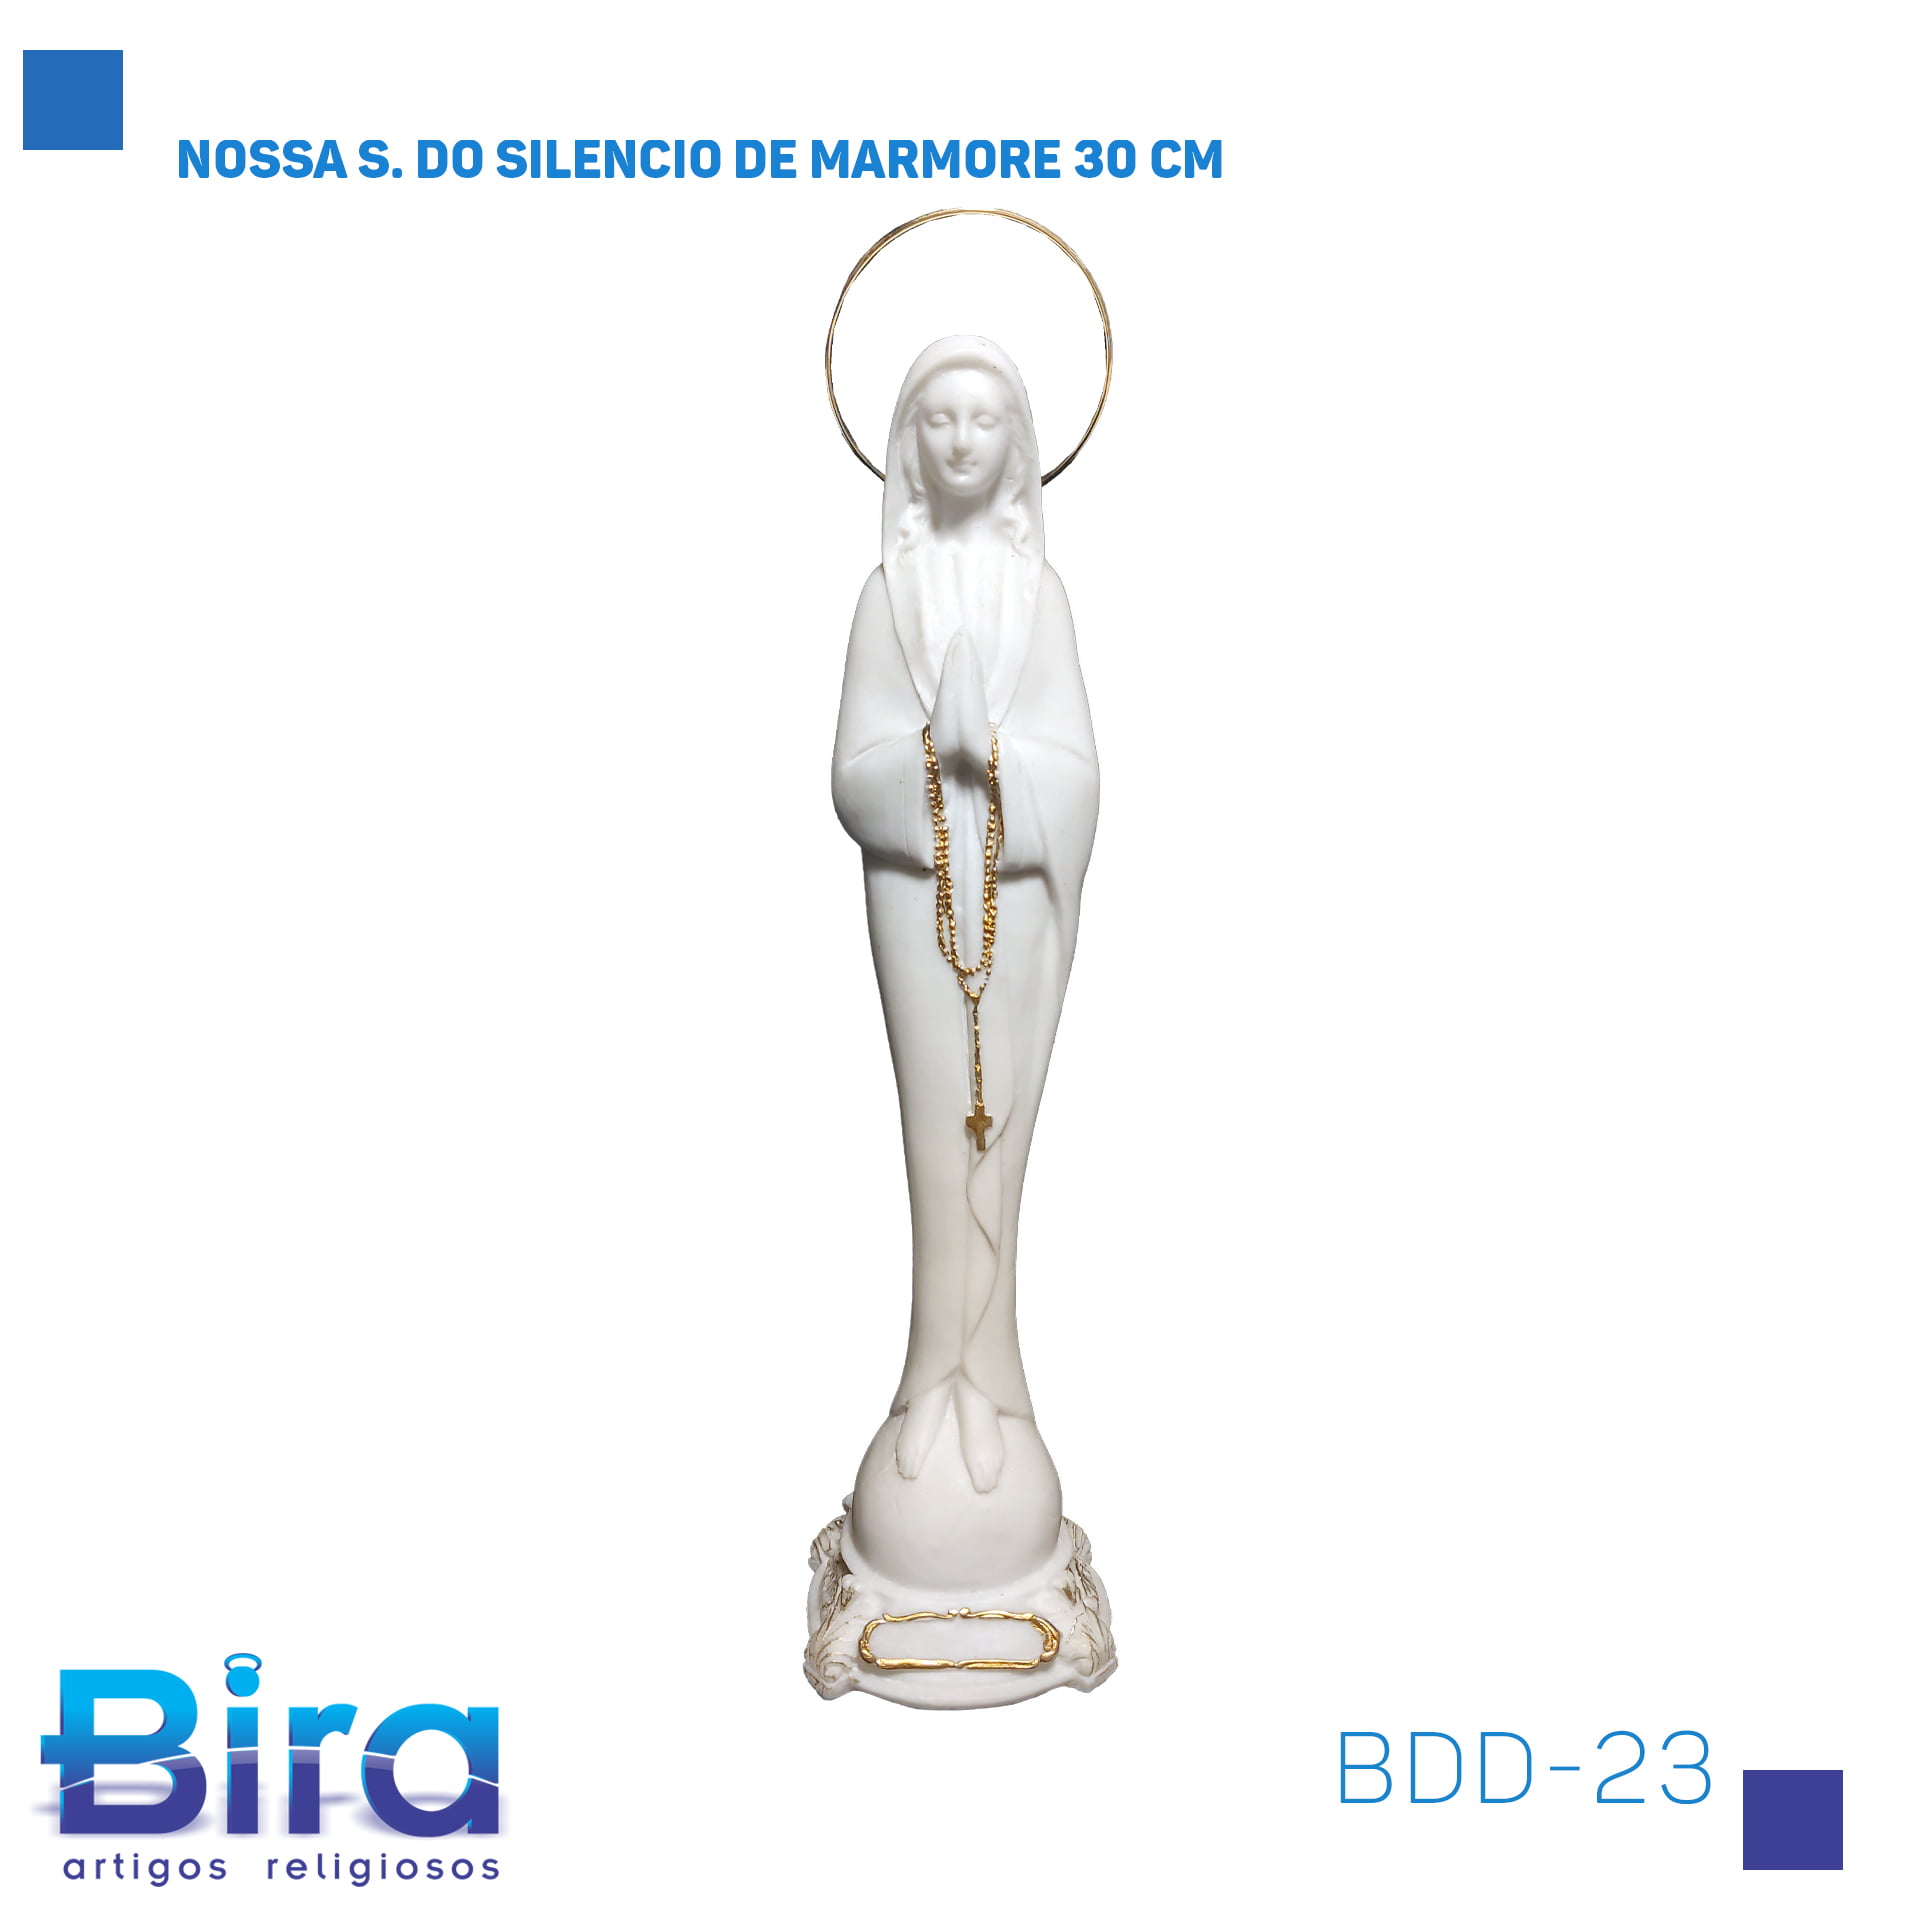 Bira Artigos Religiosos - NOSSA S. DO SILENCIO DE MARMORE 30 CM Cód.: BDD-23